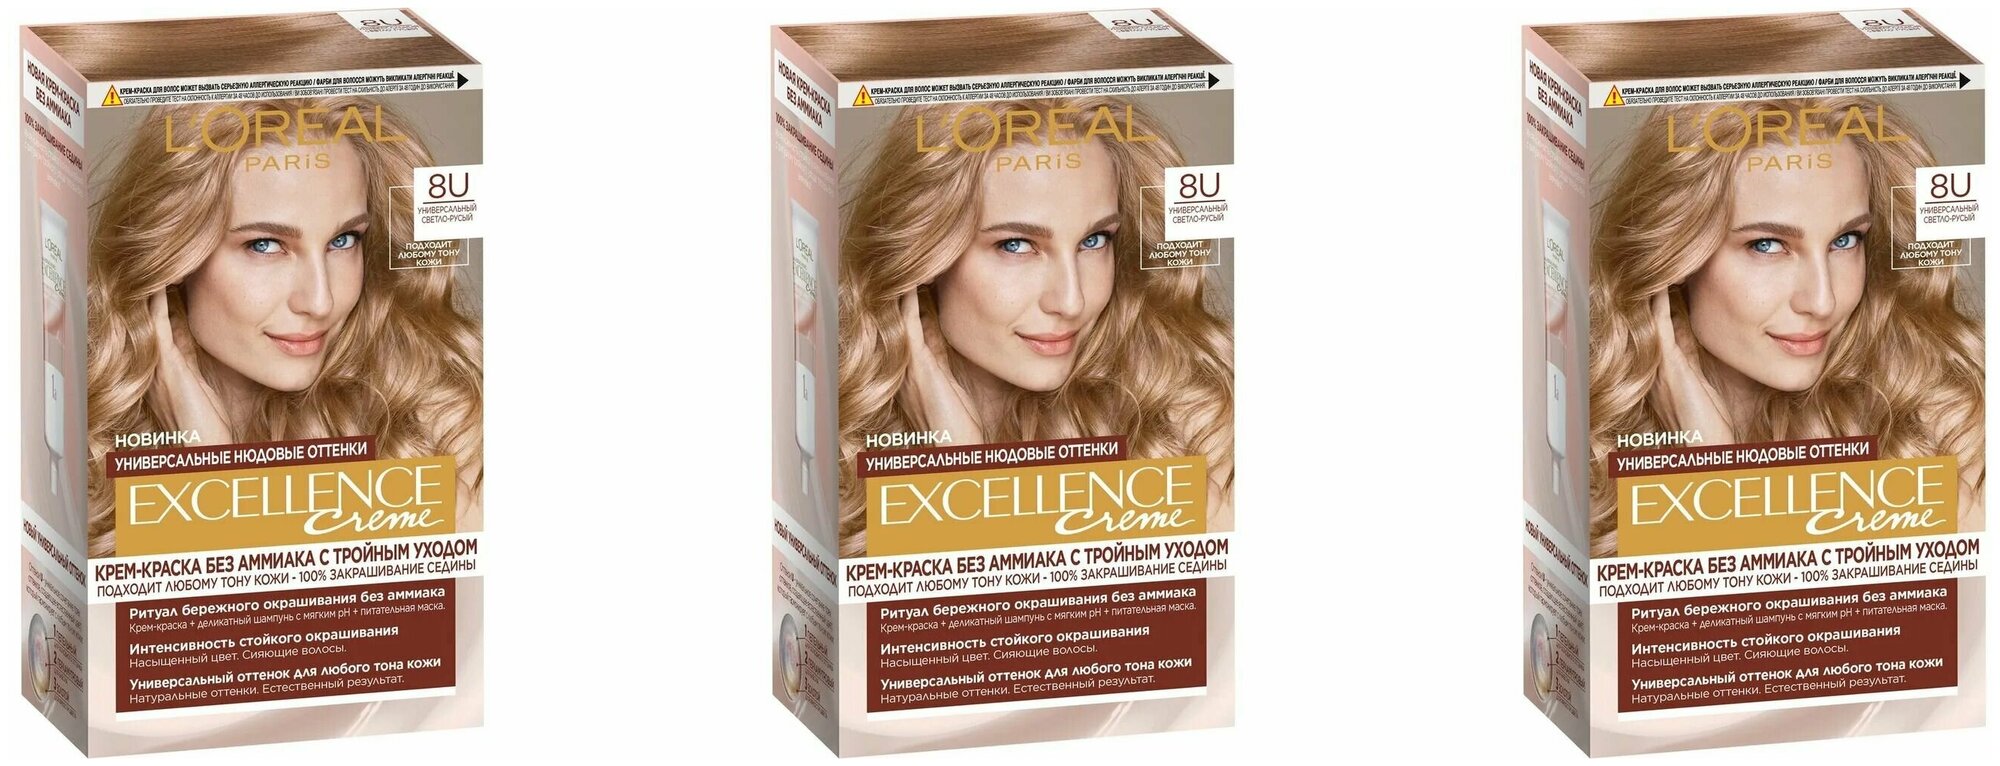 L'Oreal Paris Крем-краска для волос Excellence Creme без аммиака, 8U универсальный светло-русый, 3 штуки /